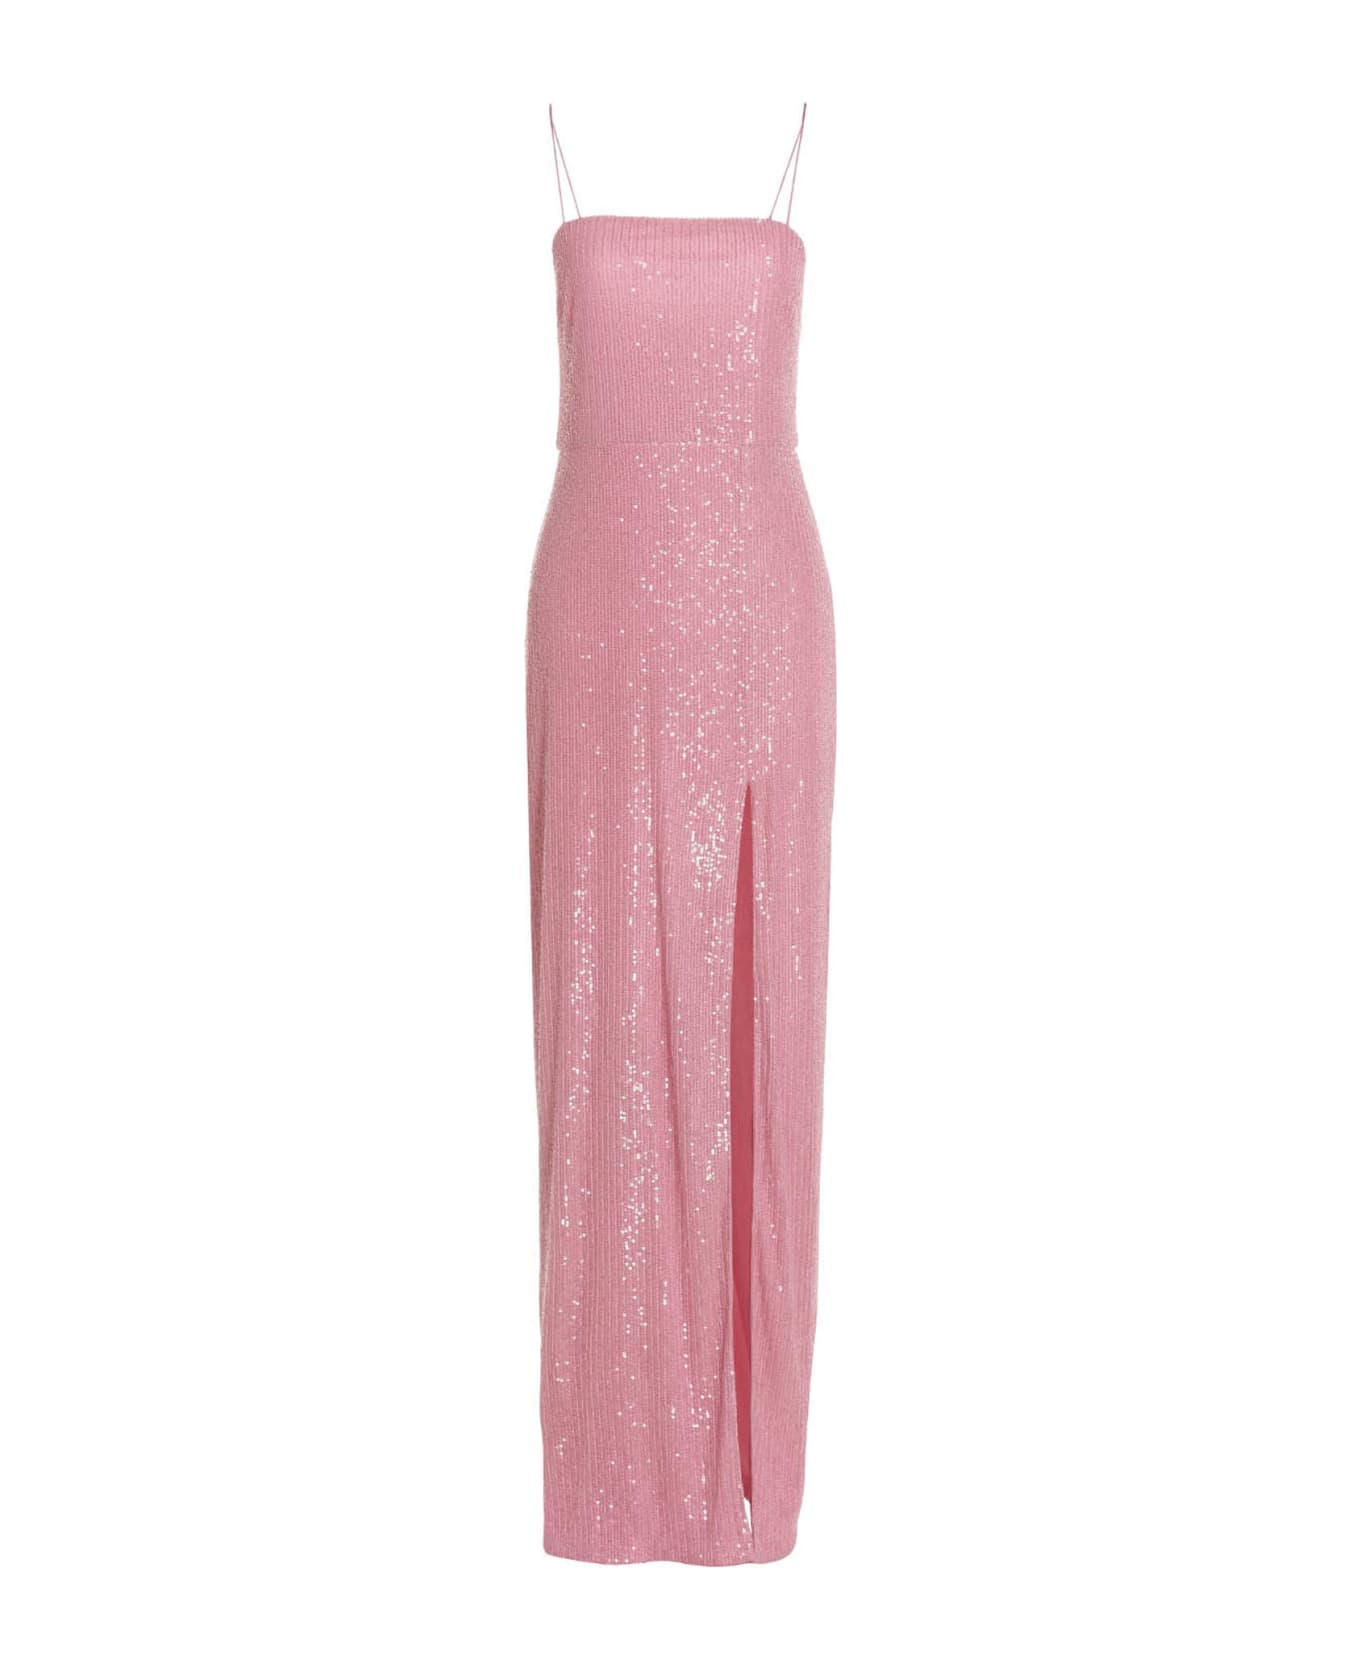 Rotate by Birger Christensen 'transparent Sequins' Dress - Pink